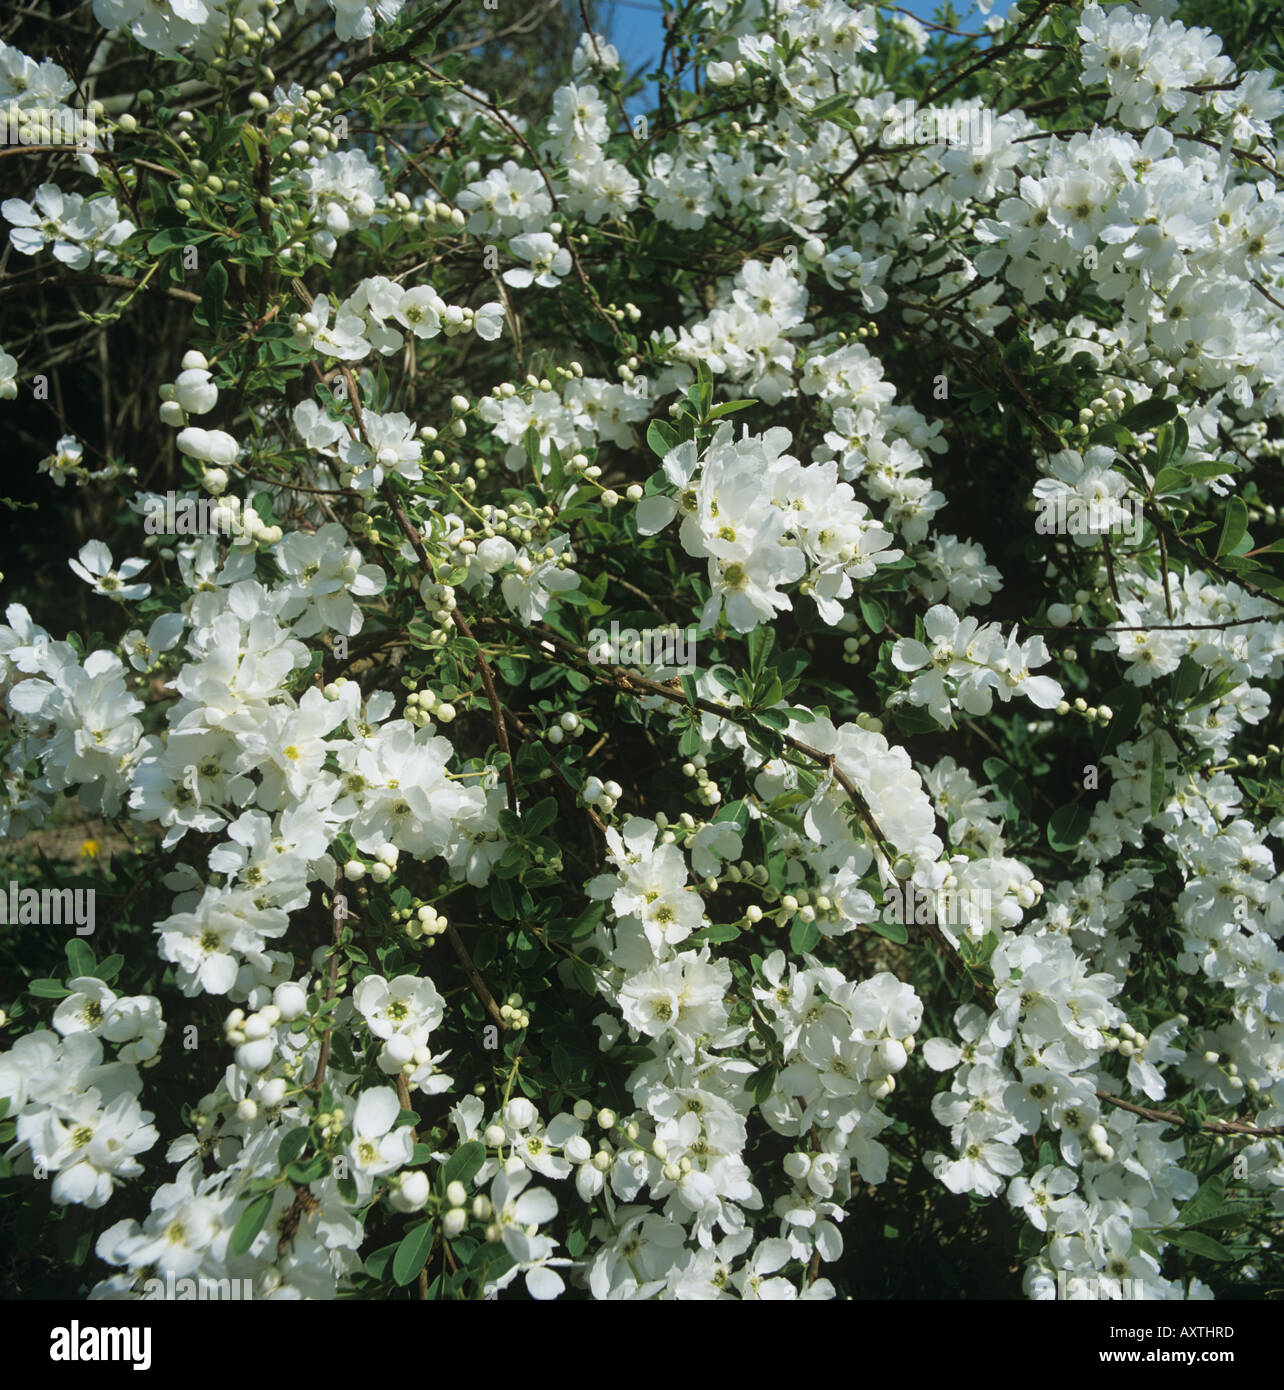 White flowering shrub Exochorda x macrantha The Bride Stock Photo